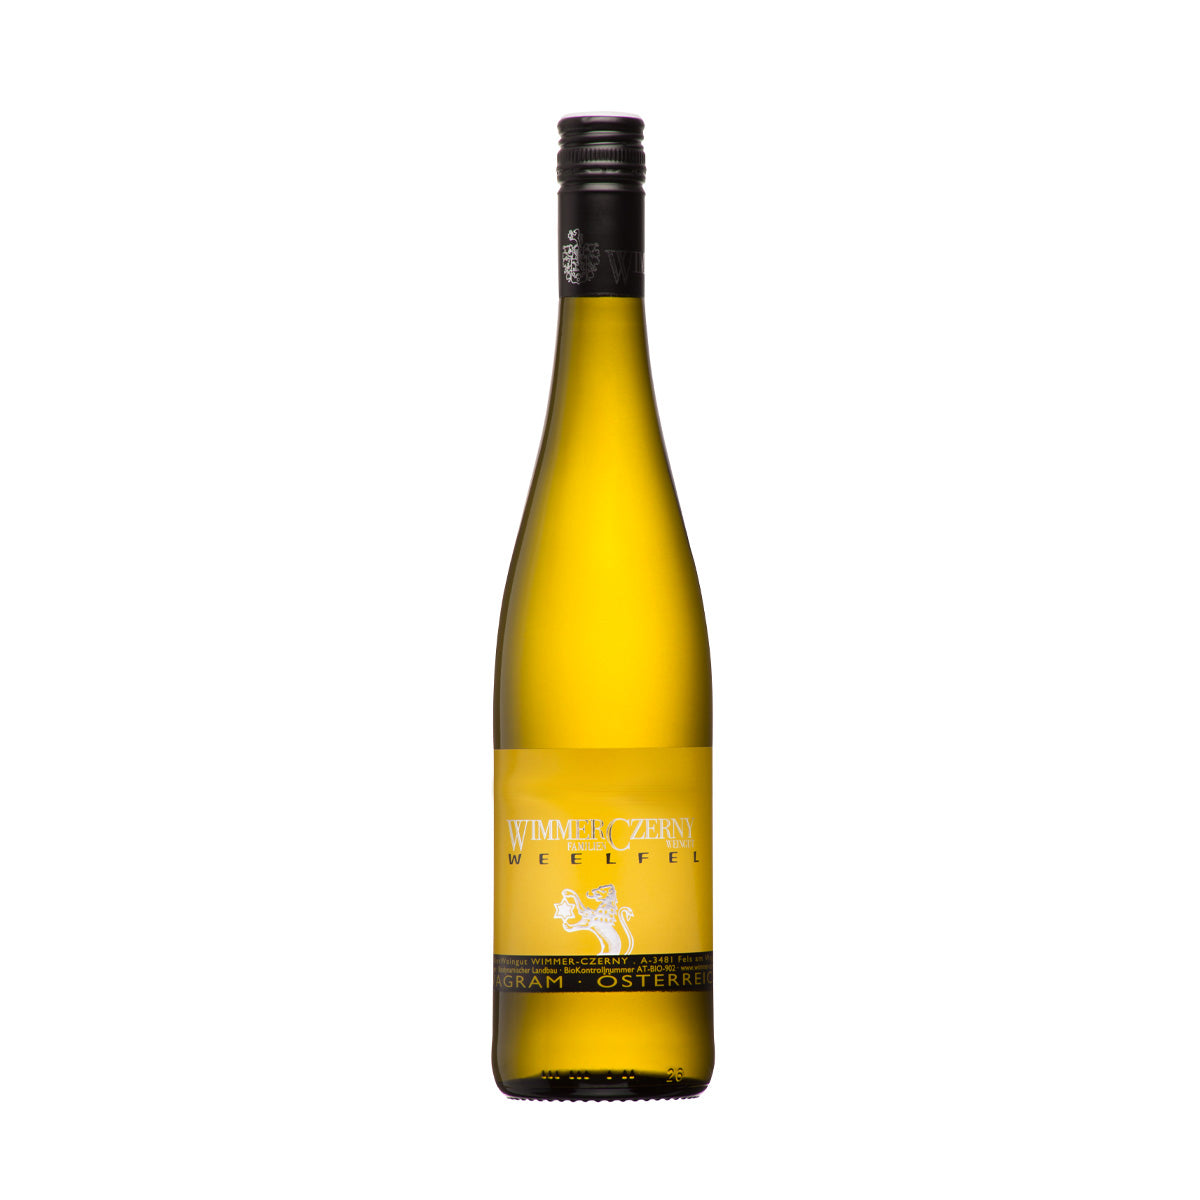 Wimmer-Czerny 'Mitterweg' Sauvignon Blanc 2019